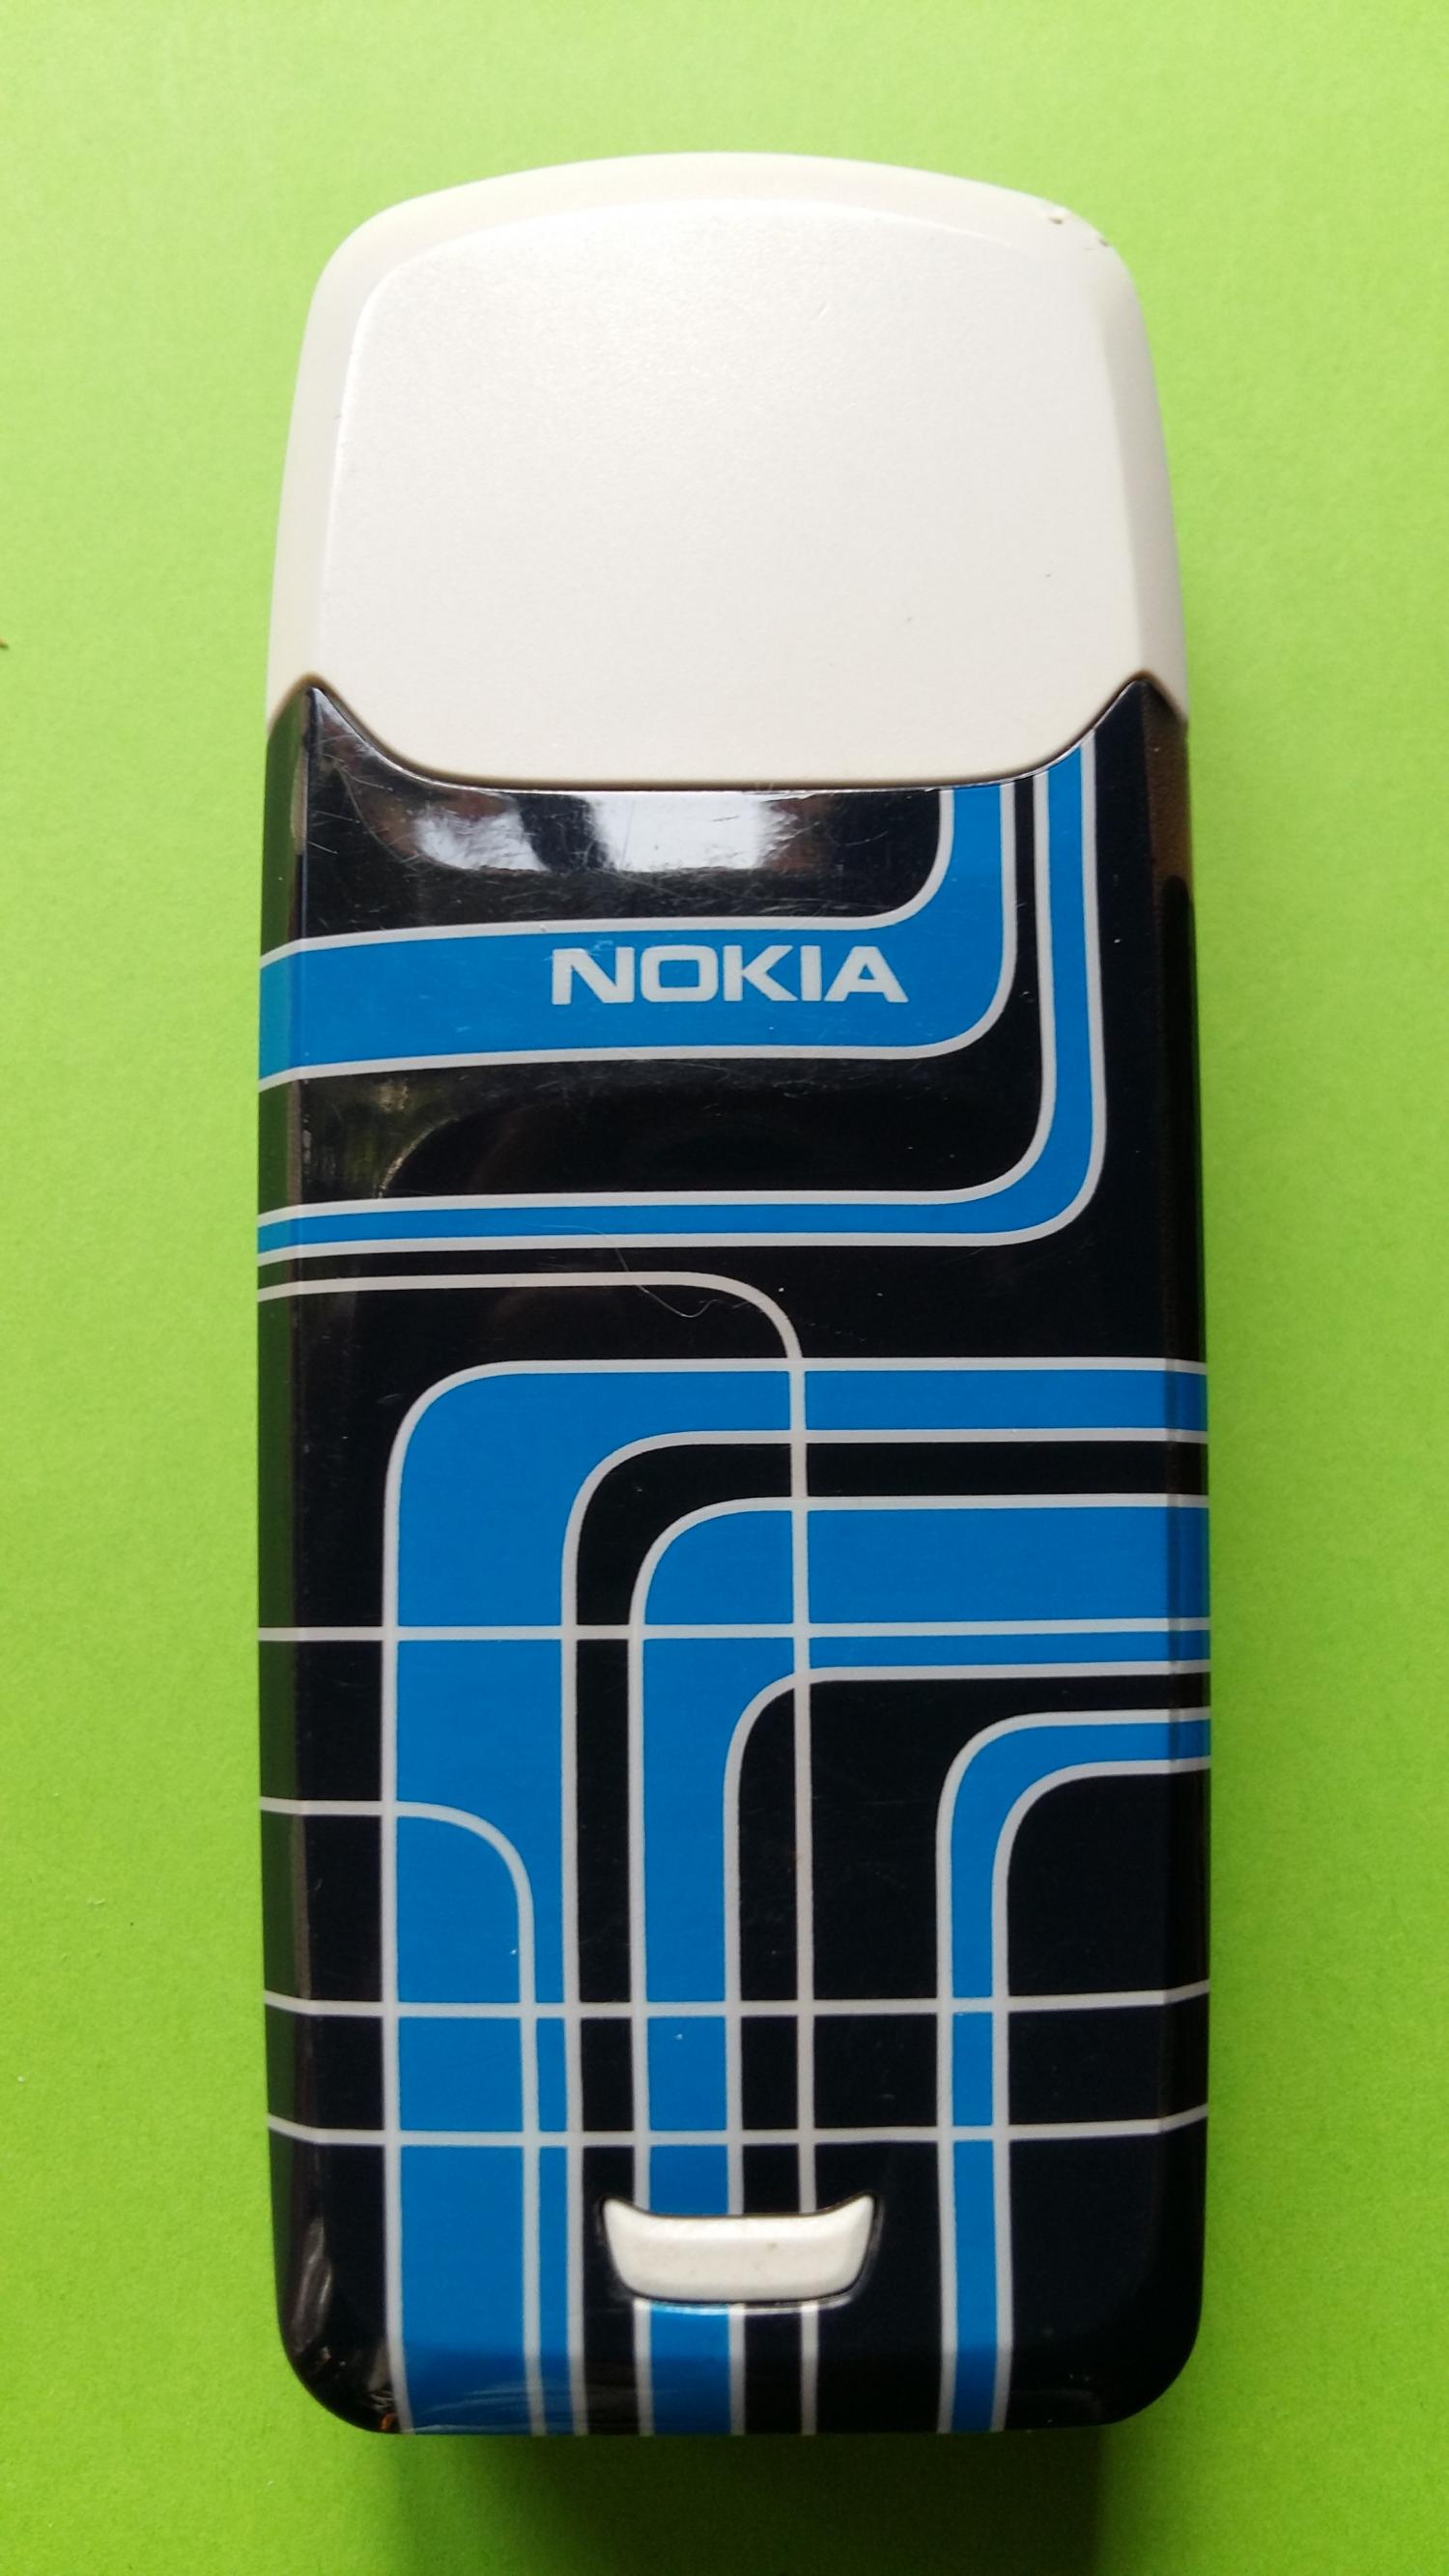 image-7321138-Nokia 3100 (4)2.jpg